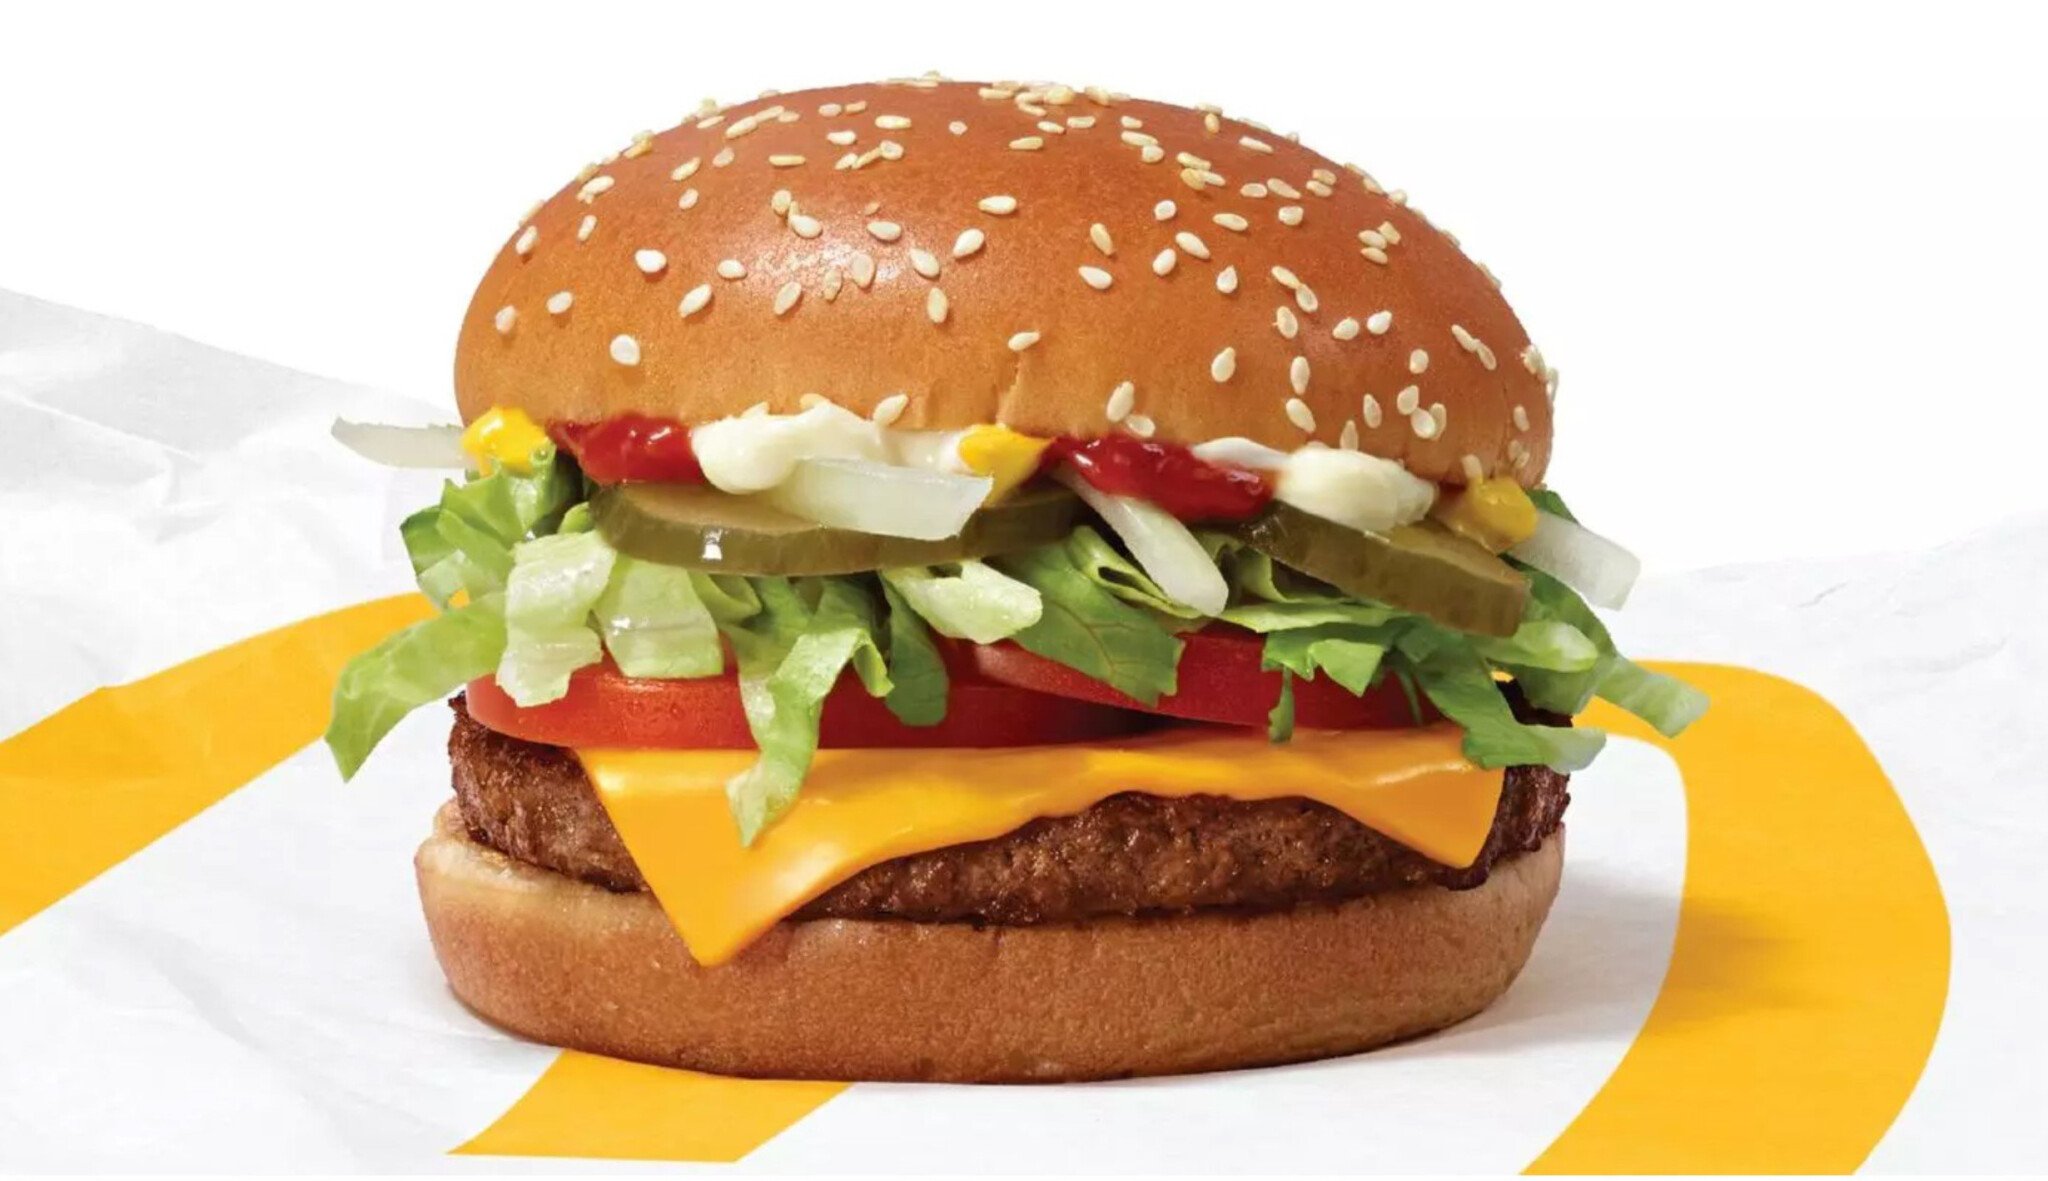 Nepoznáte rozdíl, říká McDonald’s, který testuje rostlinné maso. Stojíme na prahu nové éry?